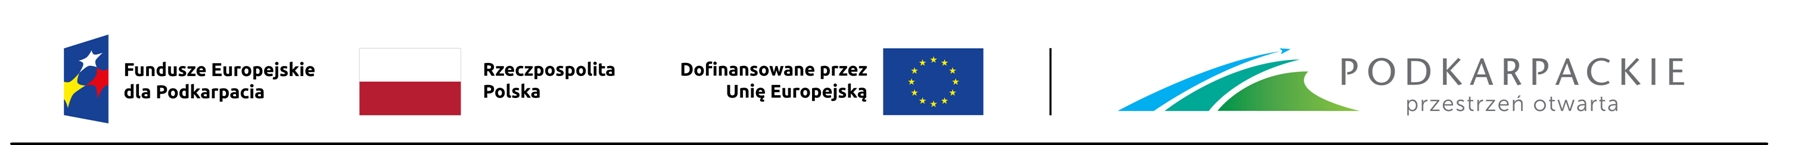 Logo funduszy dla Podkarpacia, Rzeczpospolita Polska, Podkarpacki Urząd Wojewódzk